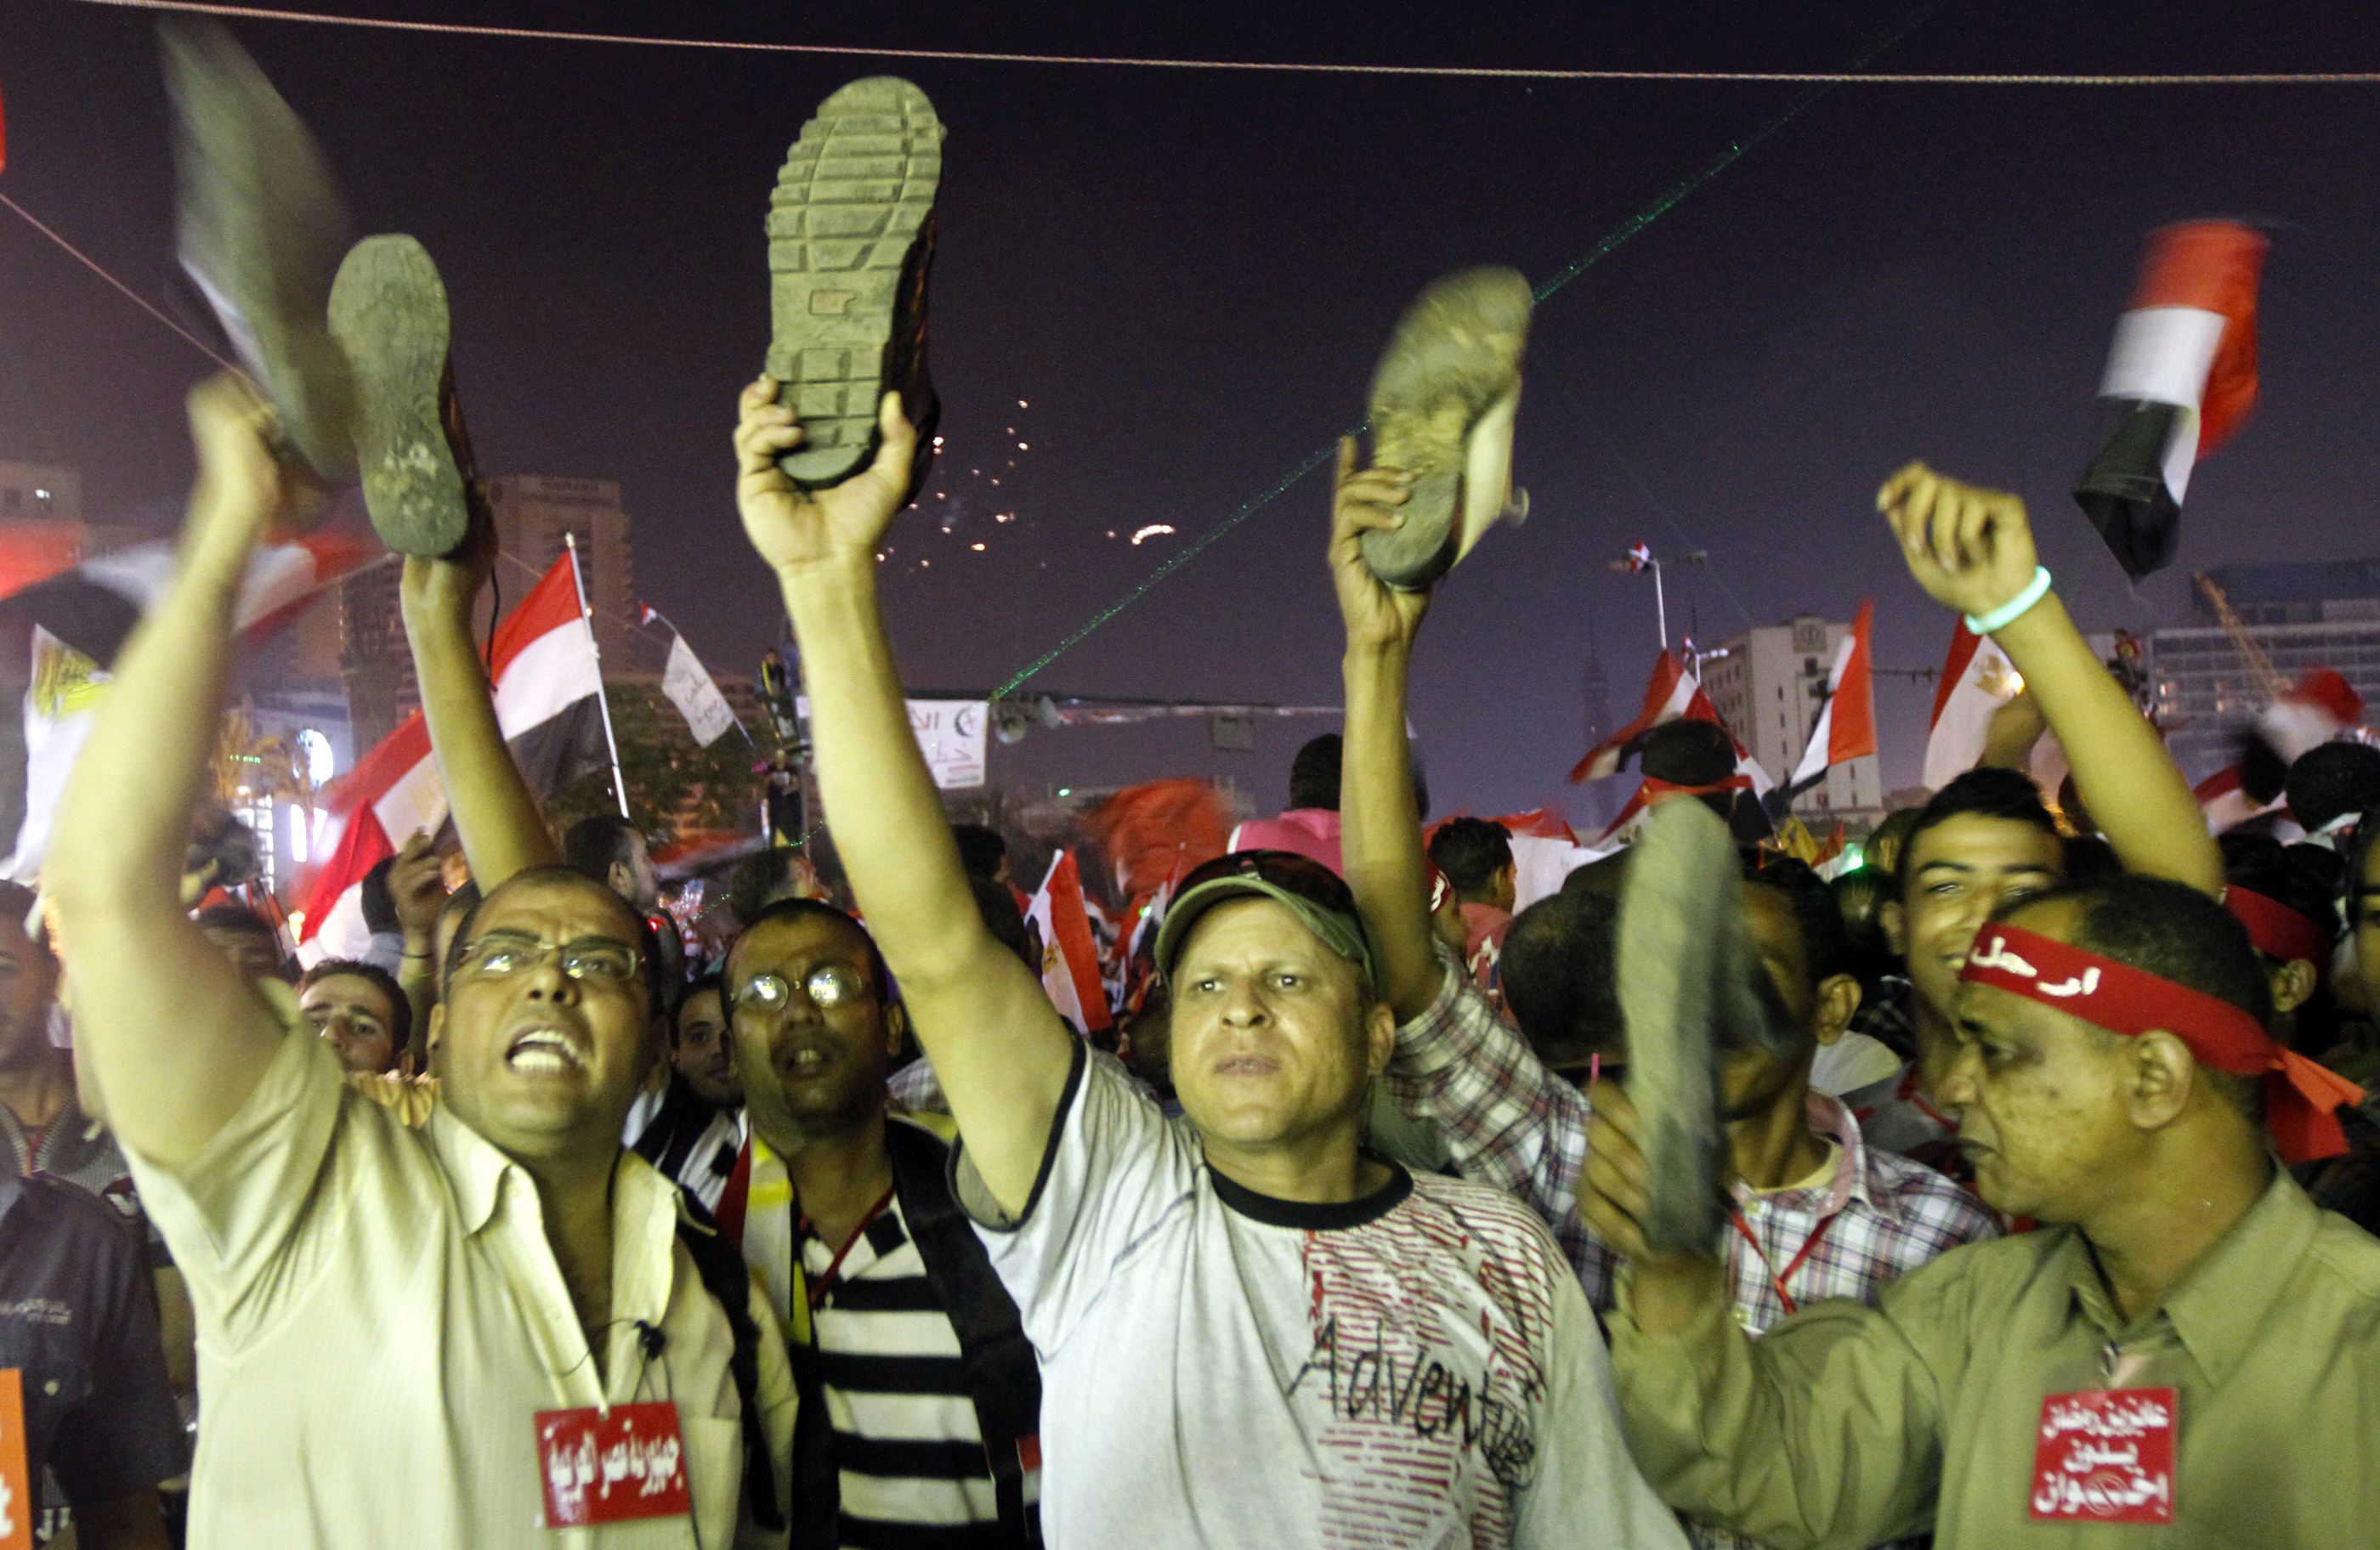 Αντικυβερνητικοί διαδηλωτές κάνουν χειρονομία εναντίον του Προέδρου Μόρσι που θεωρείται προσβλητική για τους μουσουλμάνους ΦΩΤΟ REUTERS